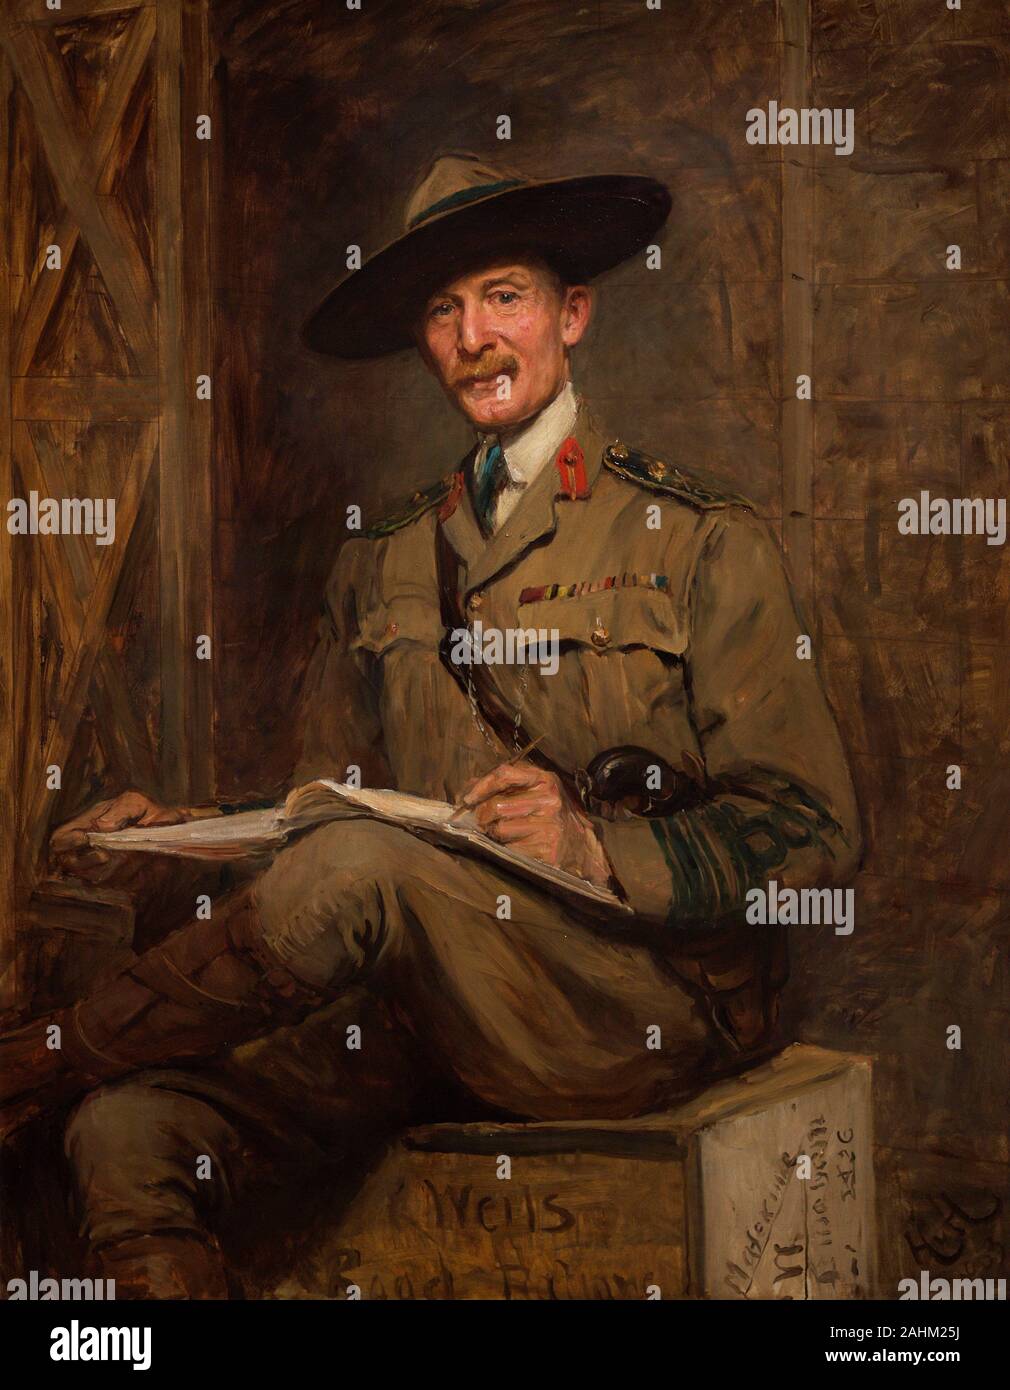 Robert Baden-Powell, je barón Baden-Powell de Gilwell (1857-1941). Pintor, escritor, escultor y militar británico. Fundador del Movimiento Scout Mundial ('Boy Scouts"). Retrato realizado por Hubert Von Herkomer (1849-1914). Oleo sobre lienzo, 1903. National Portrait Gallery. Londres. Inglaterra. Banque D'Images